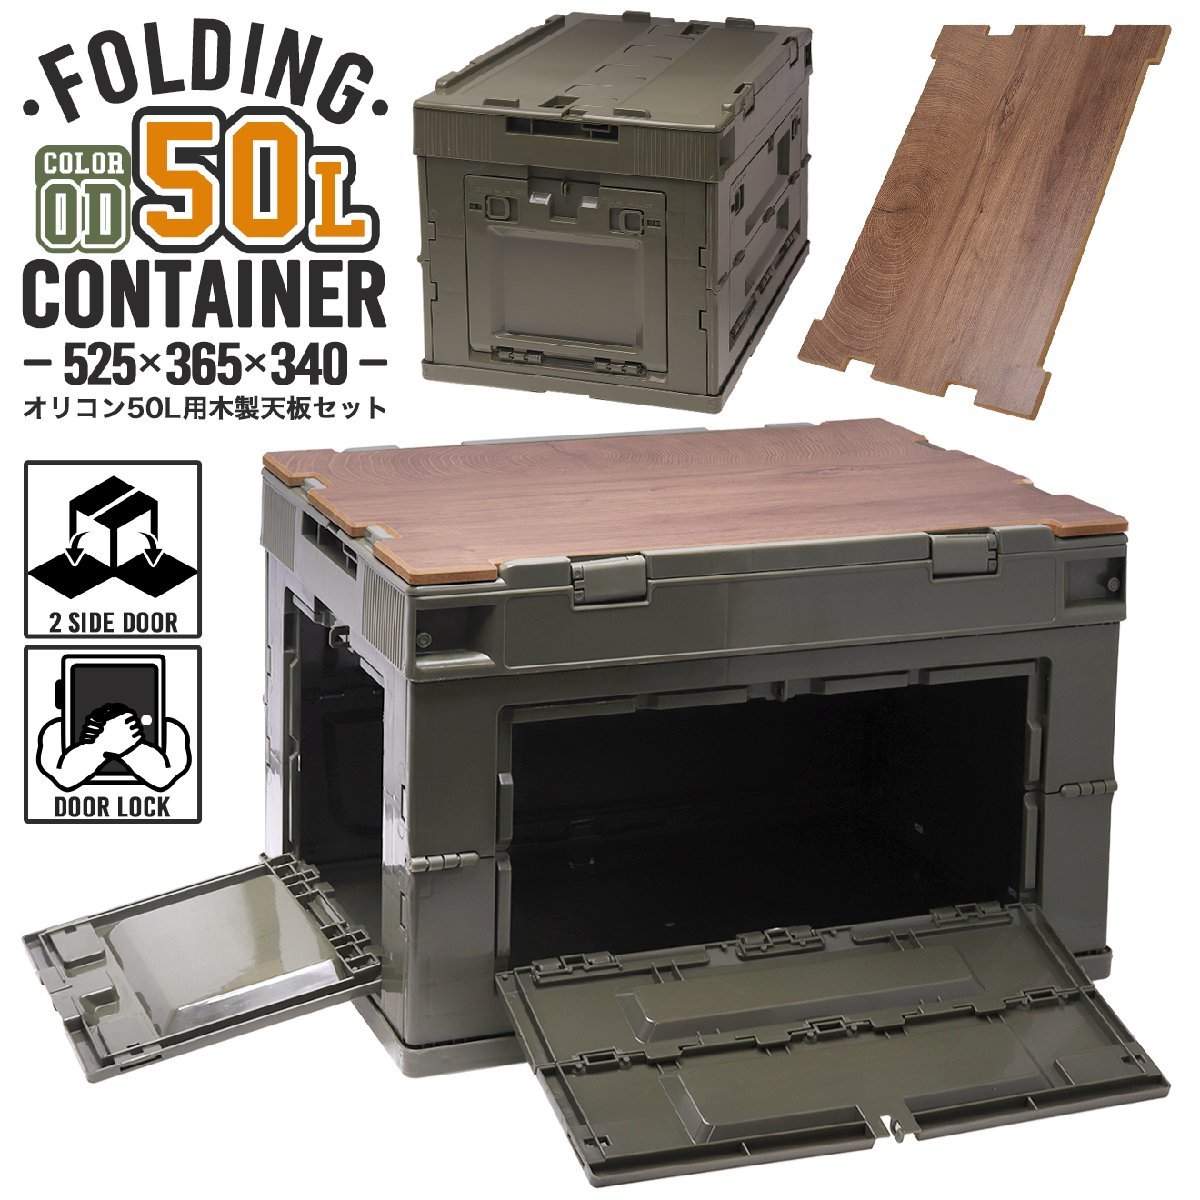 FDC0004O-TS милитари основа складной контейнер 50L средний окно 2 место есть ( длинная сторона 1& короткий сторона 1)& из дерева настольный комплект 